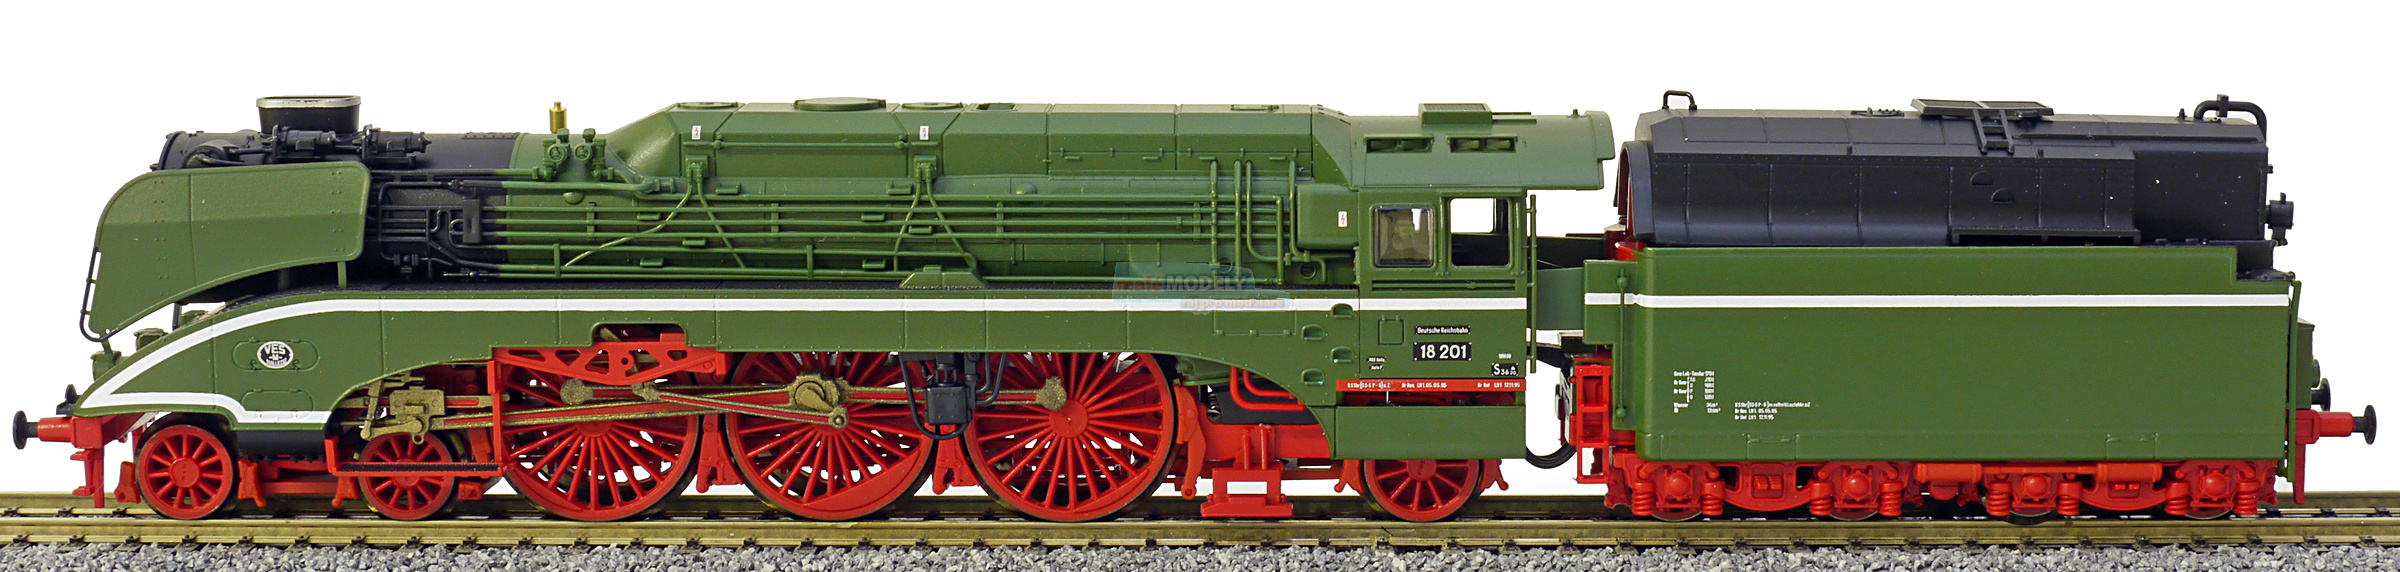 Parní lokomotiva BR 18 201 